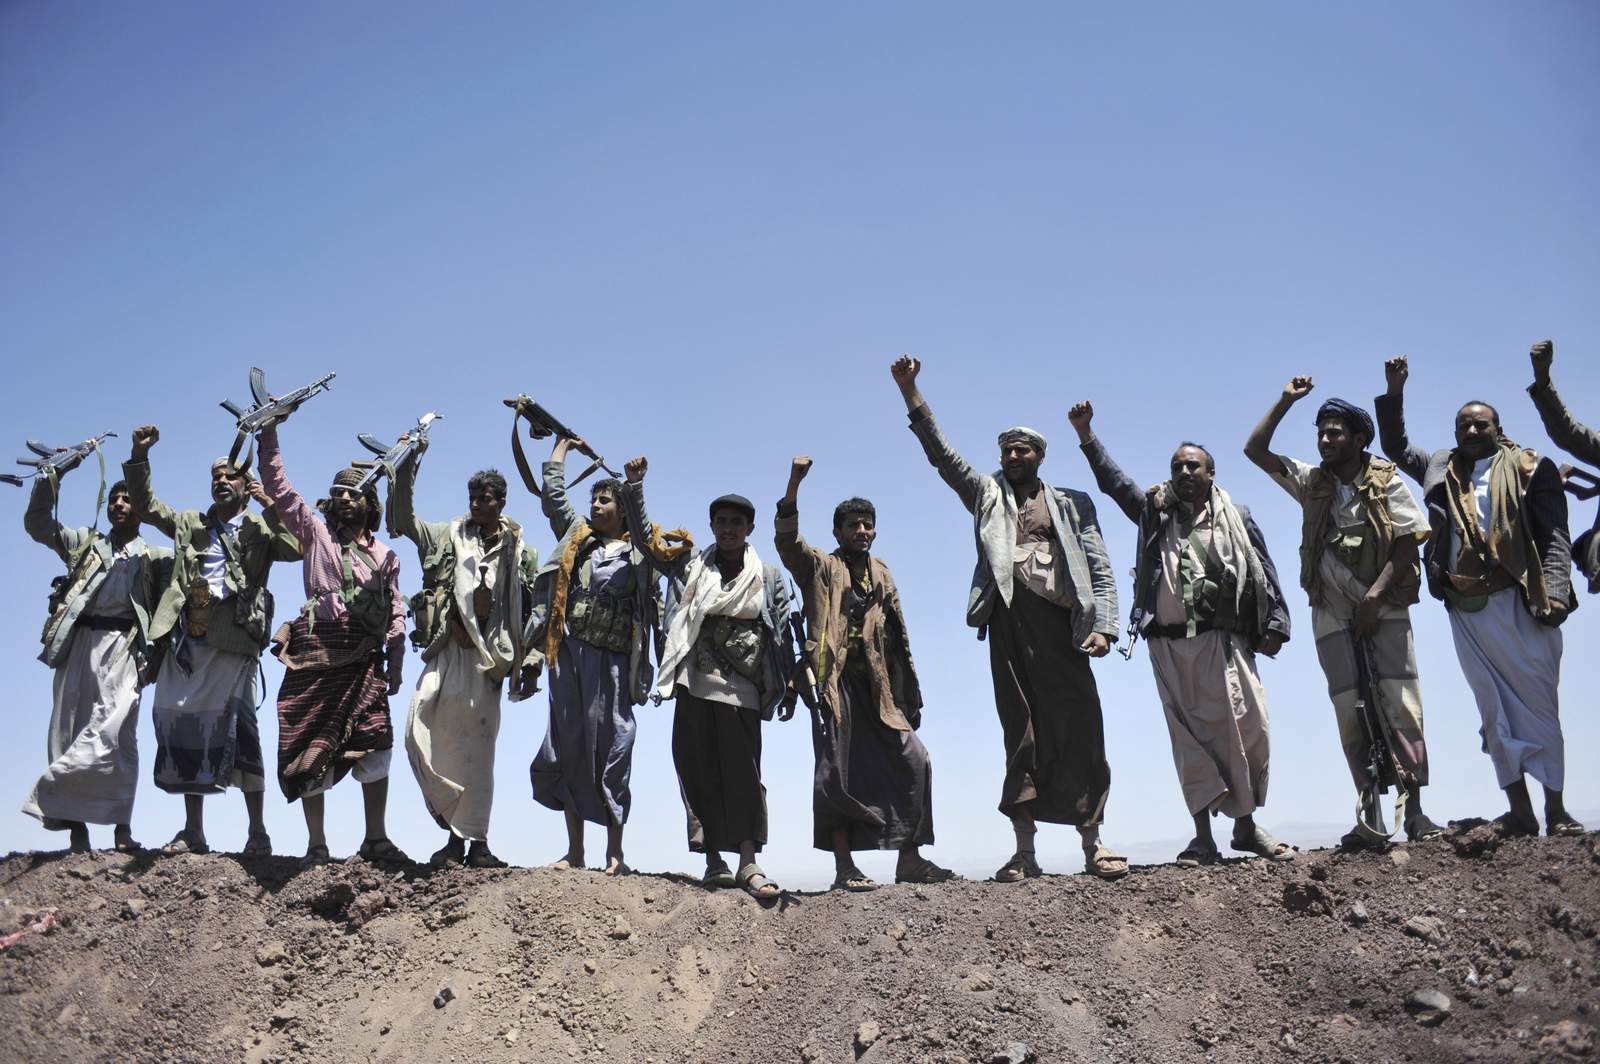 Timeline: Yemen war began in 2014 when Houthis seized Sanaa